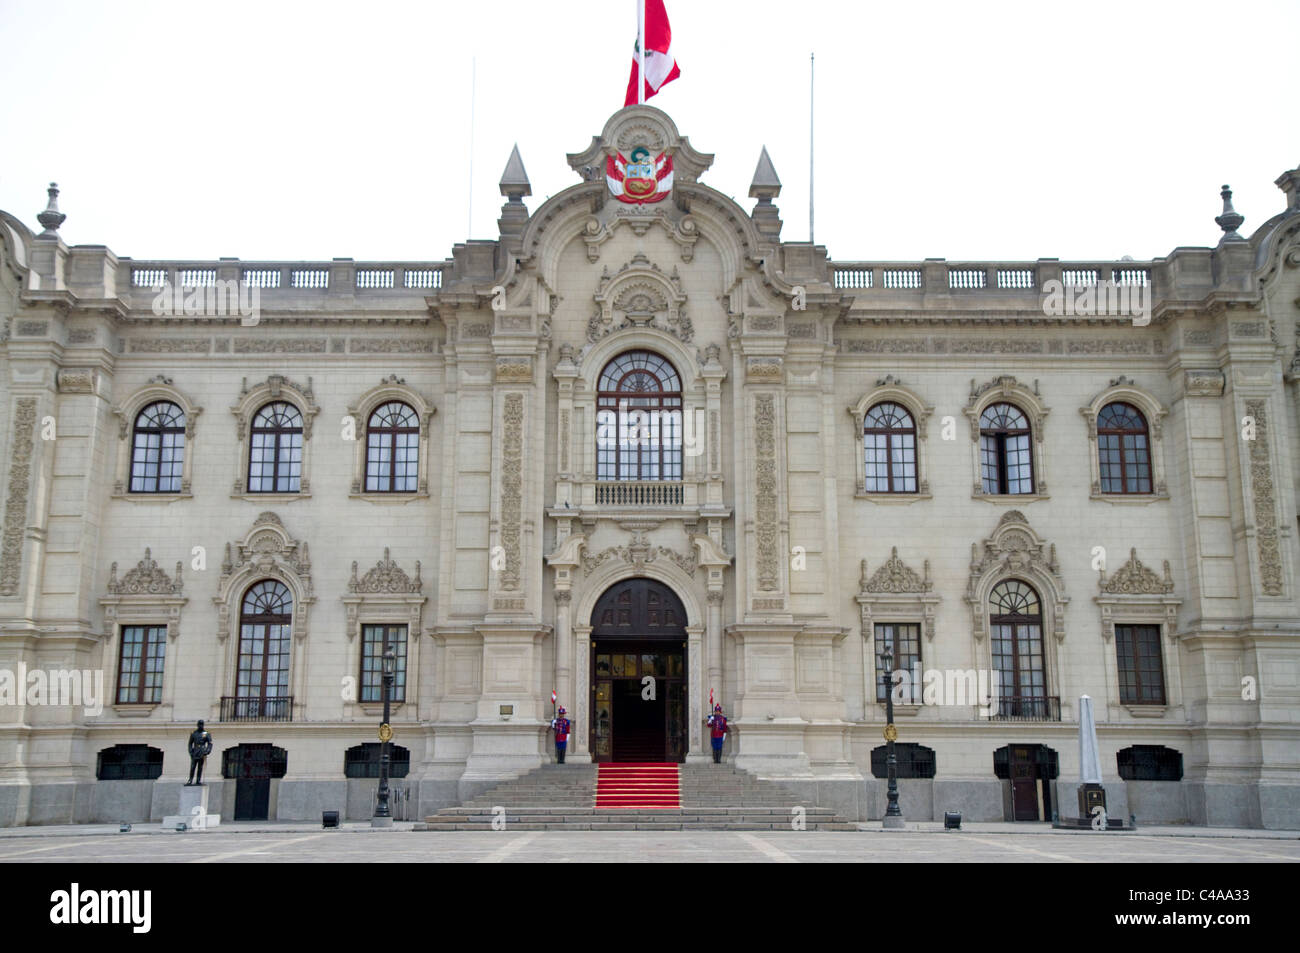 Le Palais du Gouvernement du Pérou aussi connu comme la maison de Pizarro, situé sur le côté nord de la Plaza Mayor de Lima, Pérou. Banque D'Images